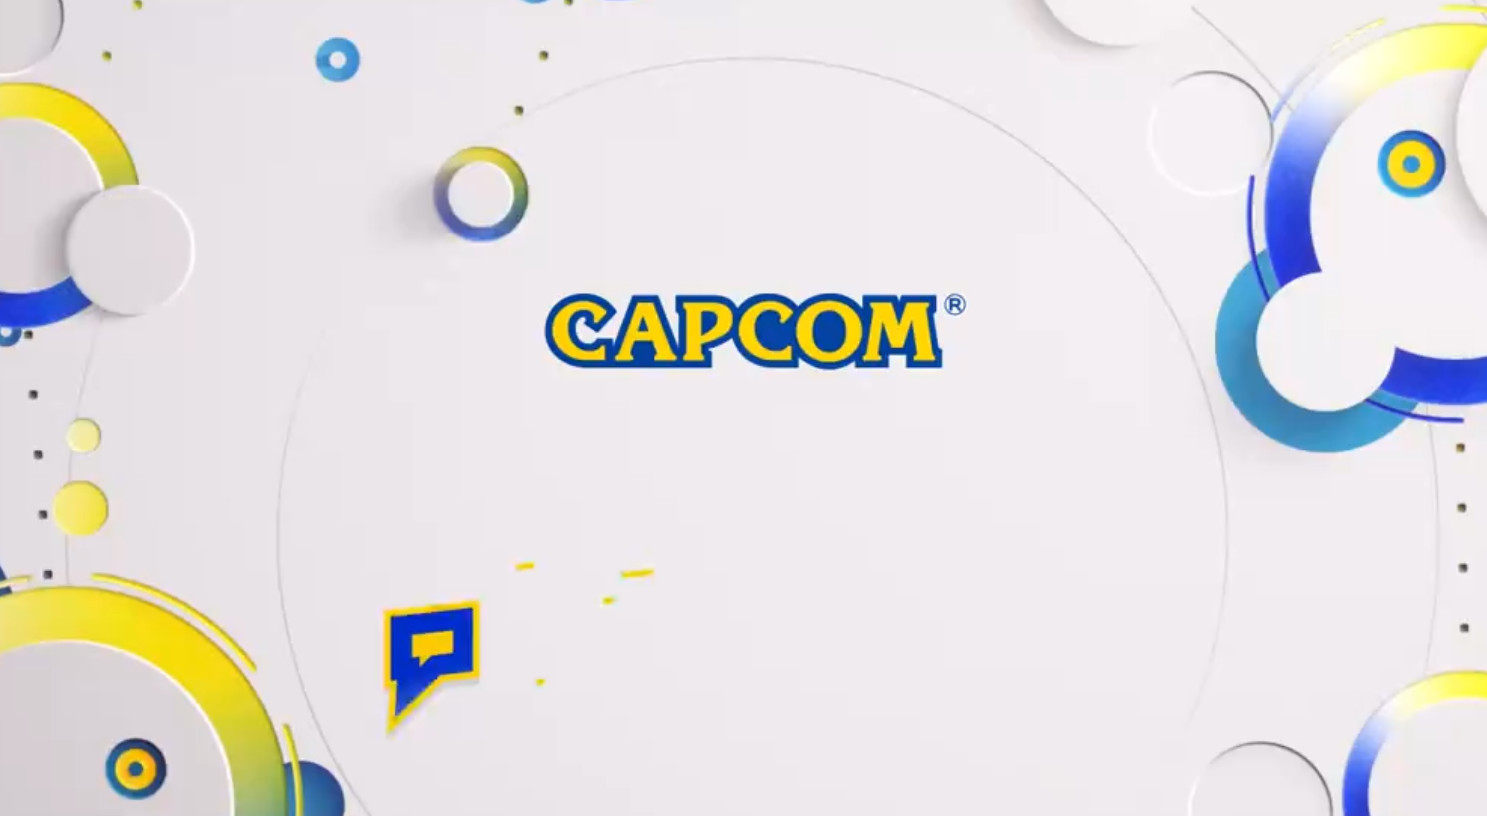 Capcom logo on light gray background.